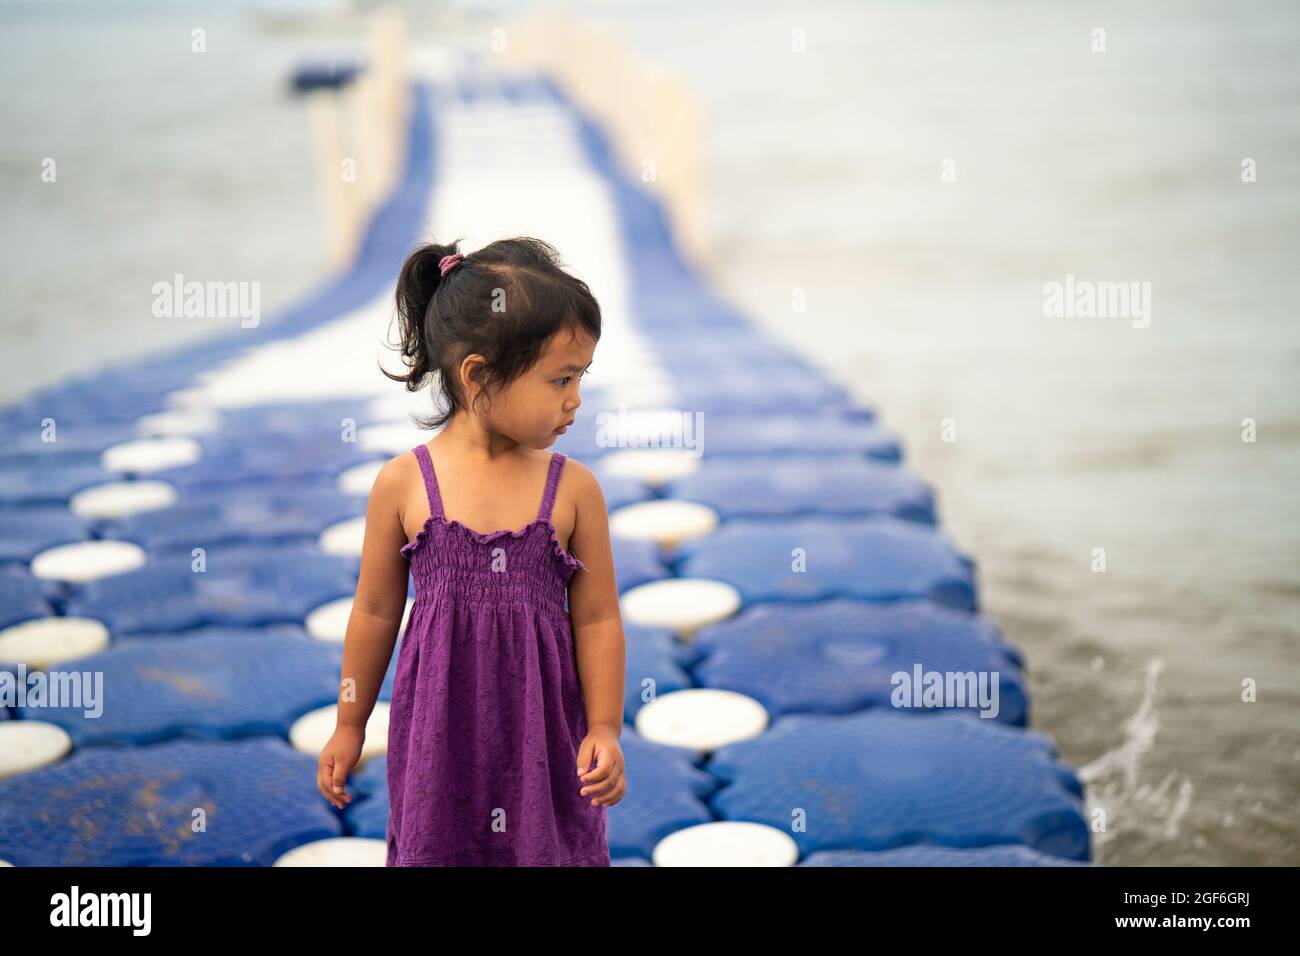 Niedliches kleines Thai-Mädchen, das auf einem modularen schwimmenden Dock aus Kunststoff läuft Stockfoto